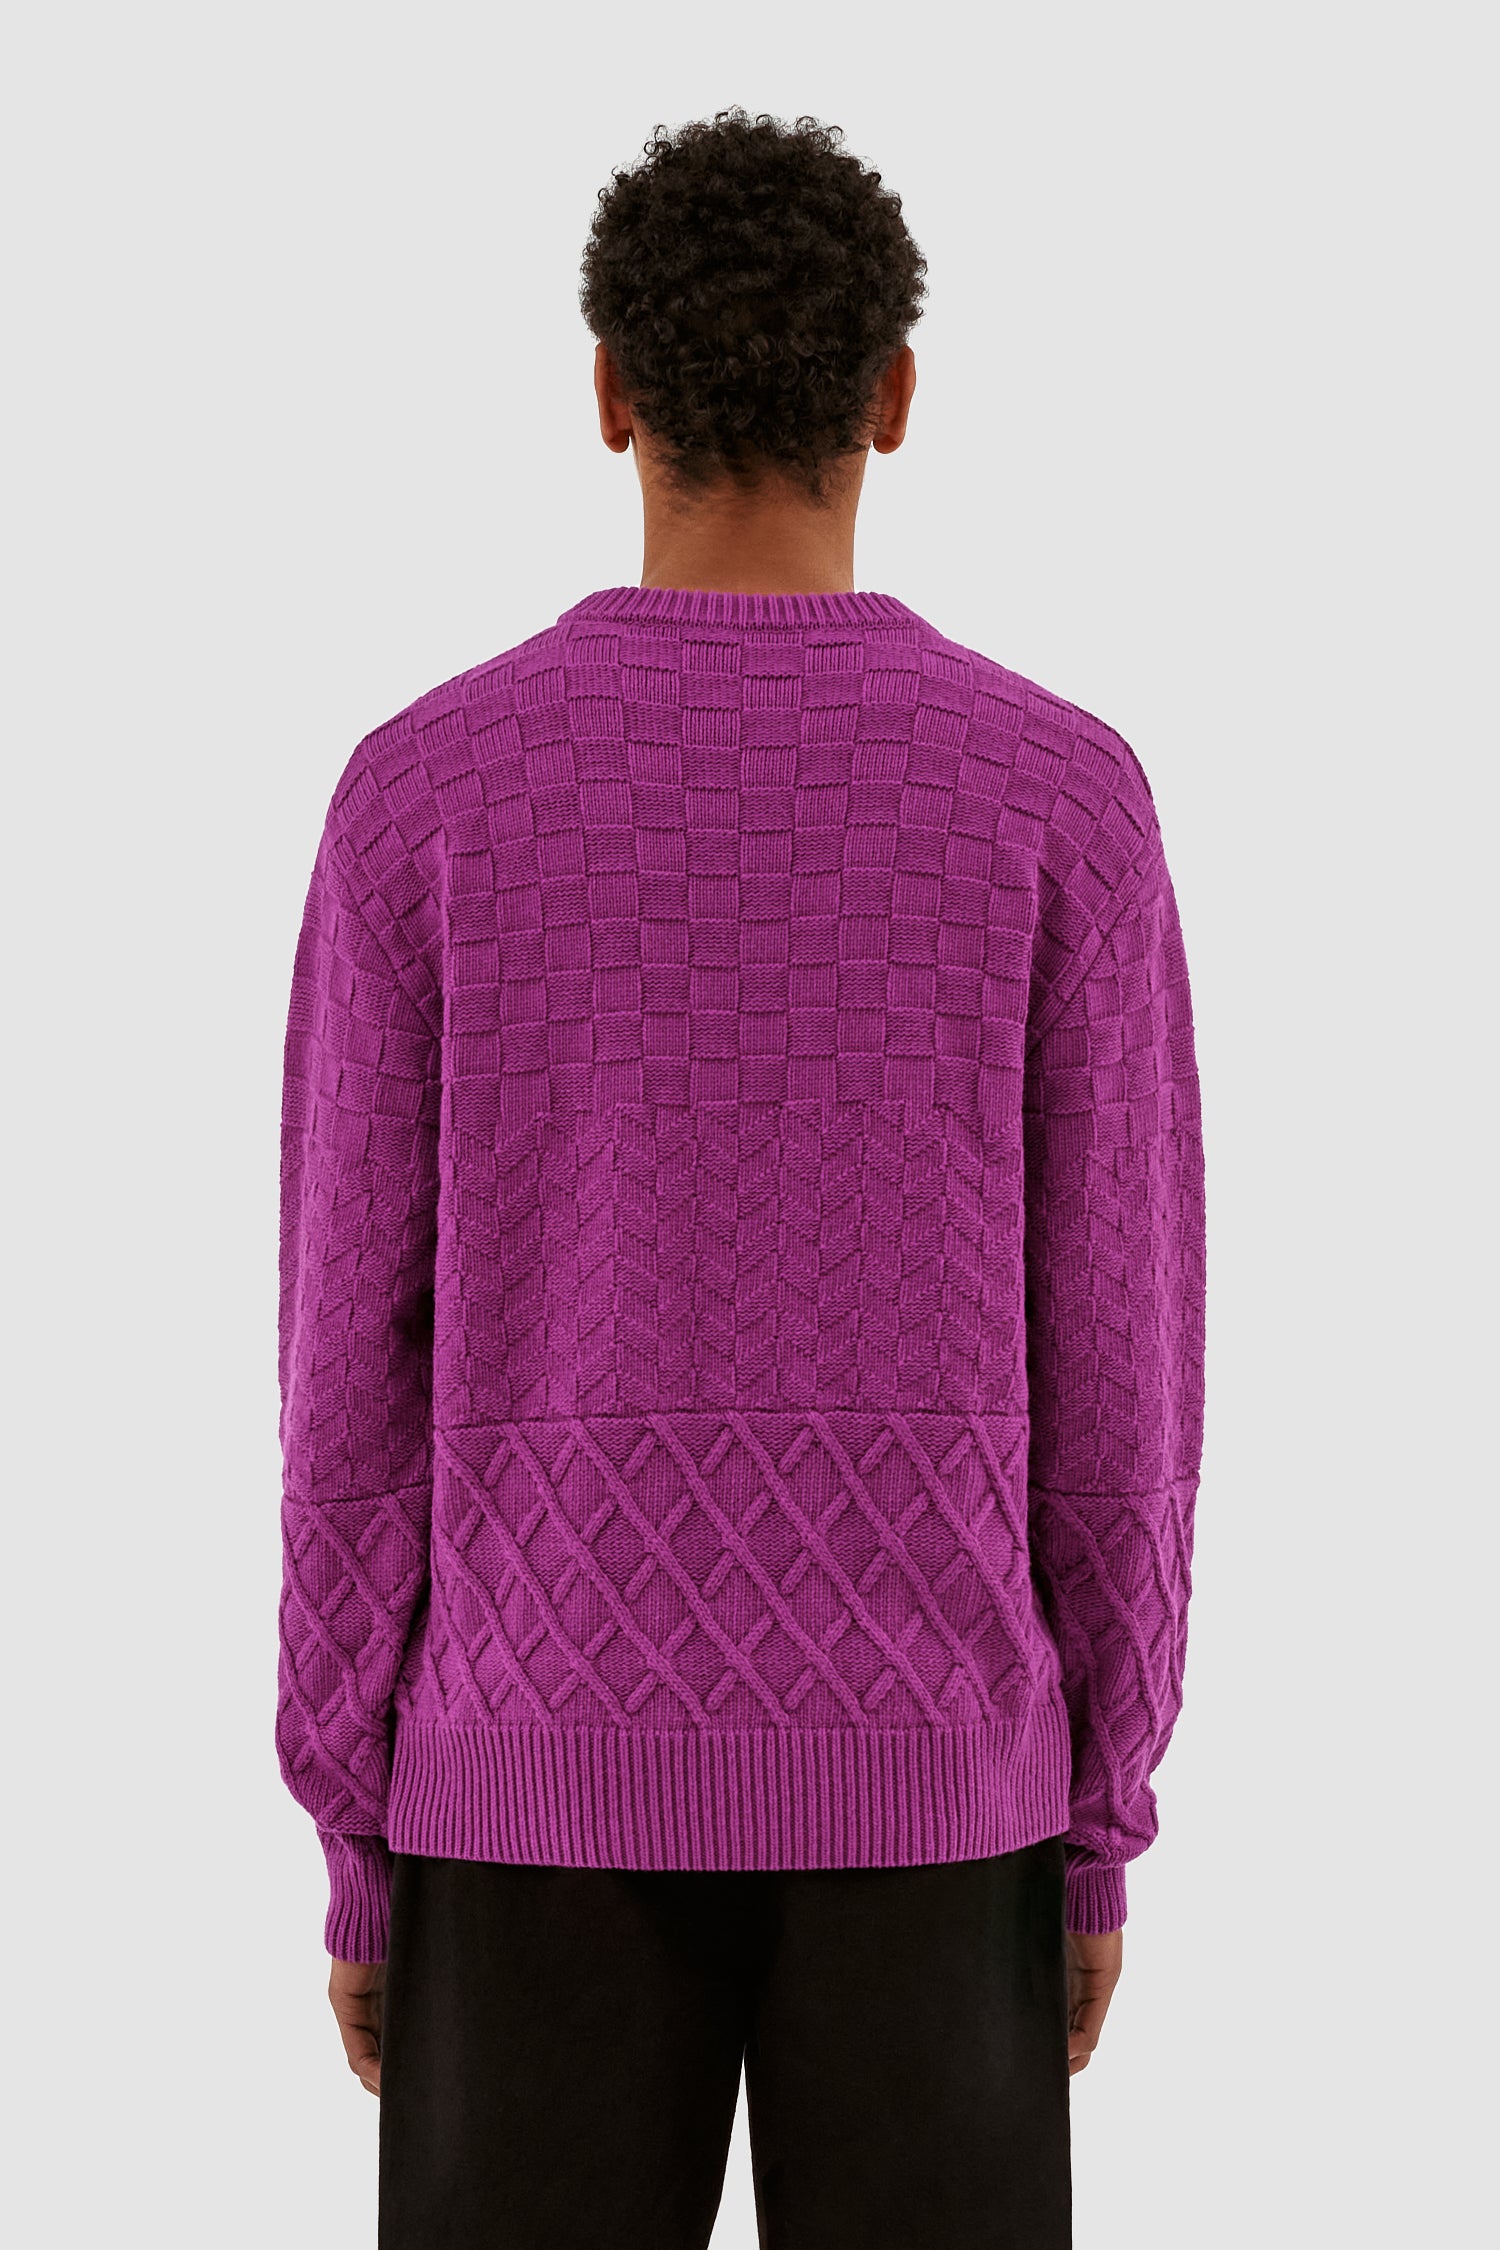 Kurt Sweater - Pink